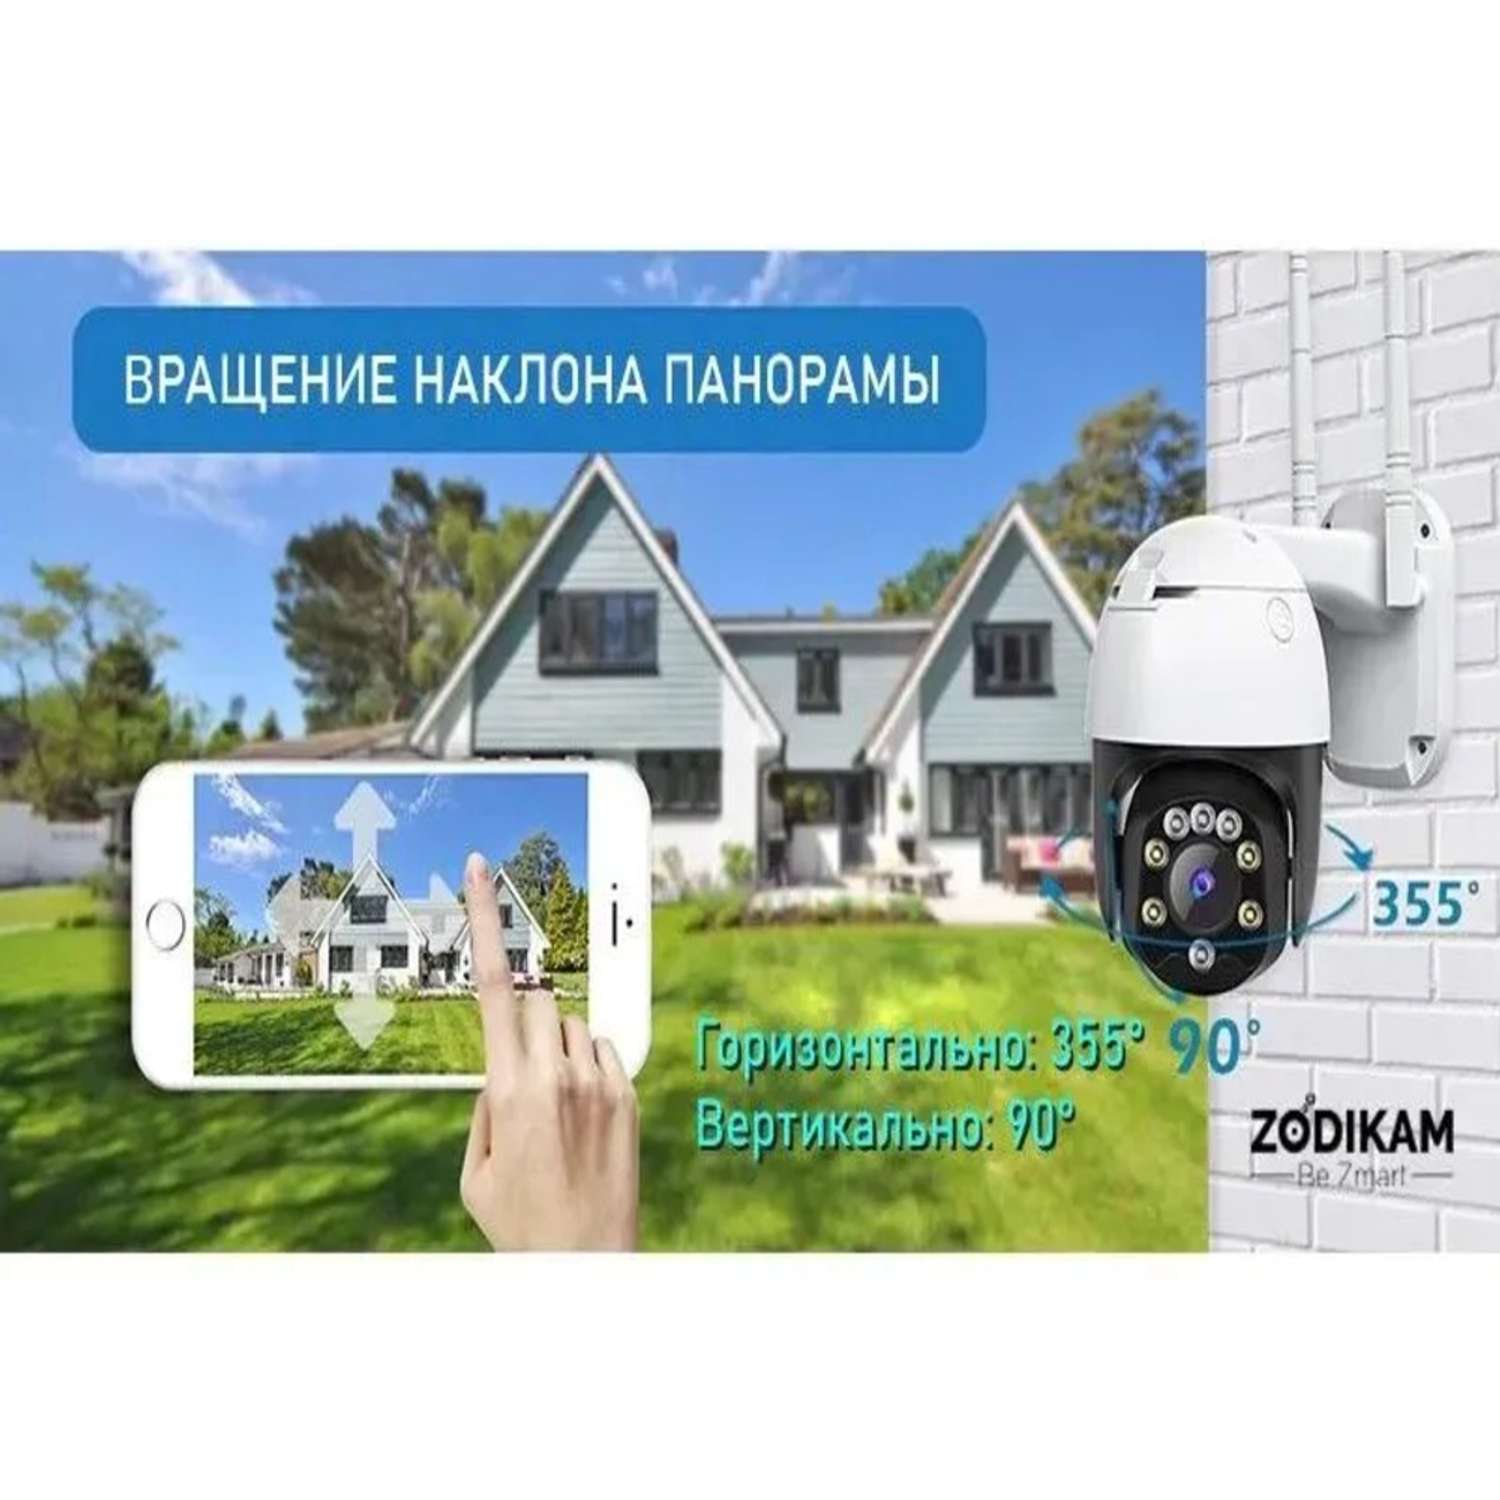 Камера ZDK Уличная 4G и 3G видеонаблюдения Zodikam - фото 8